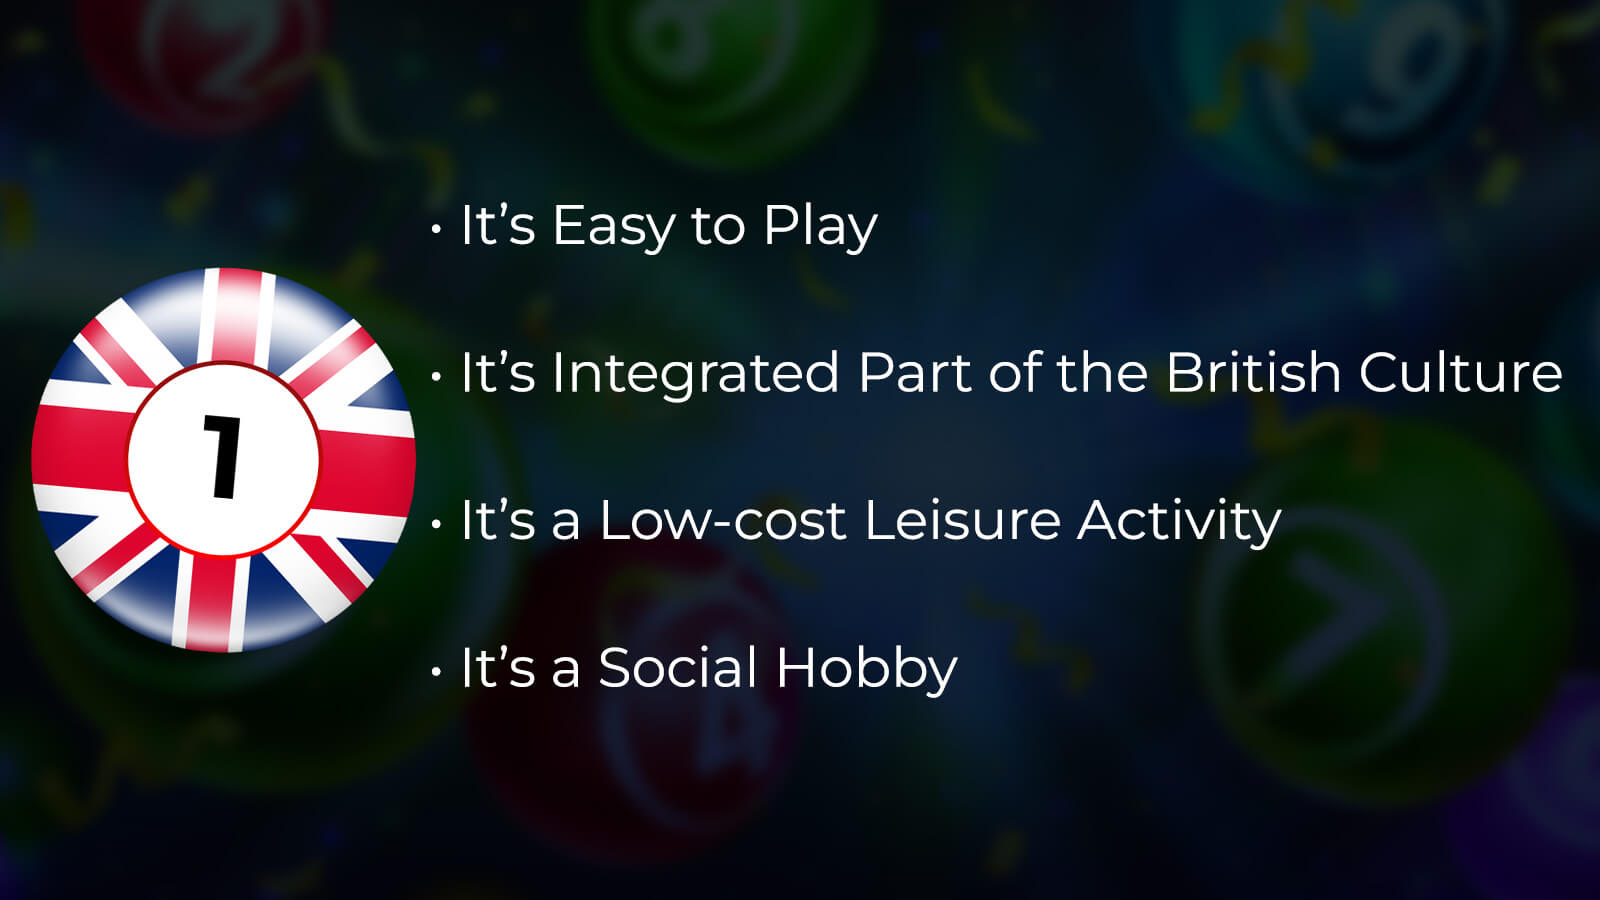 What Makes Bingo So Popular in the UK